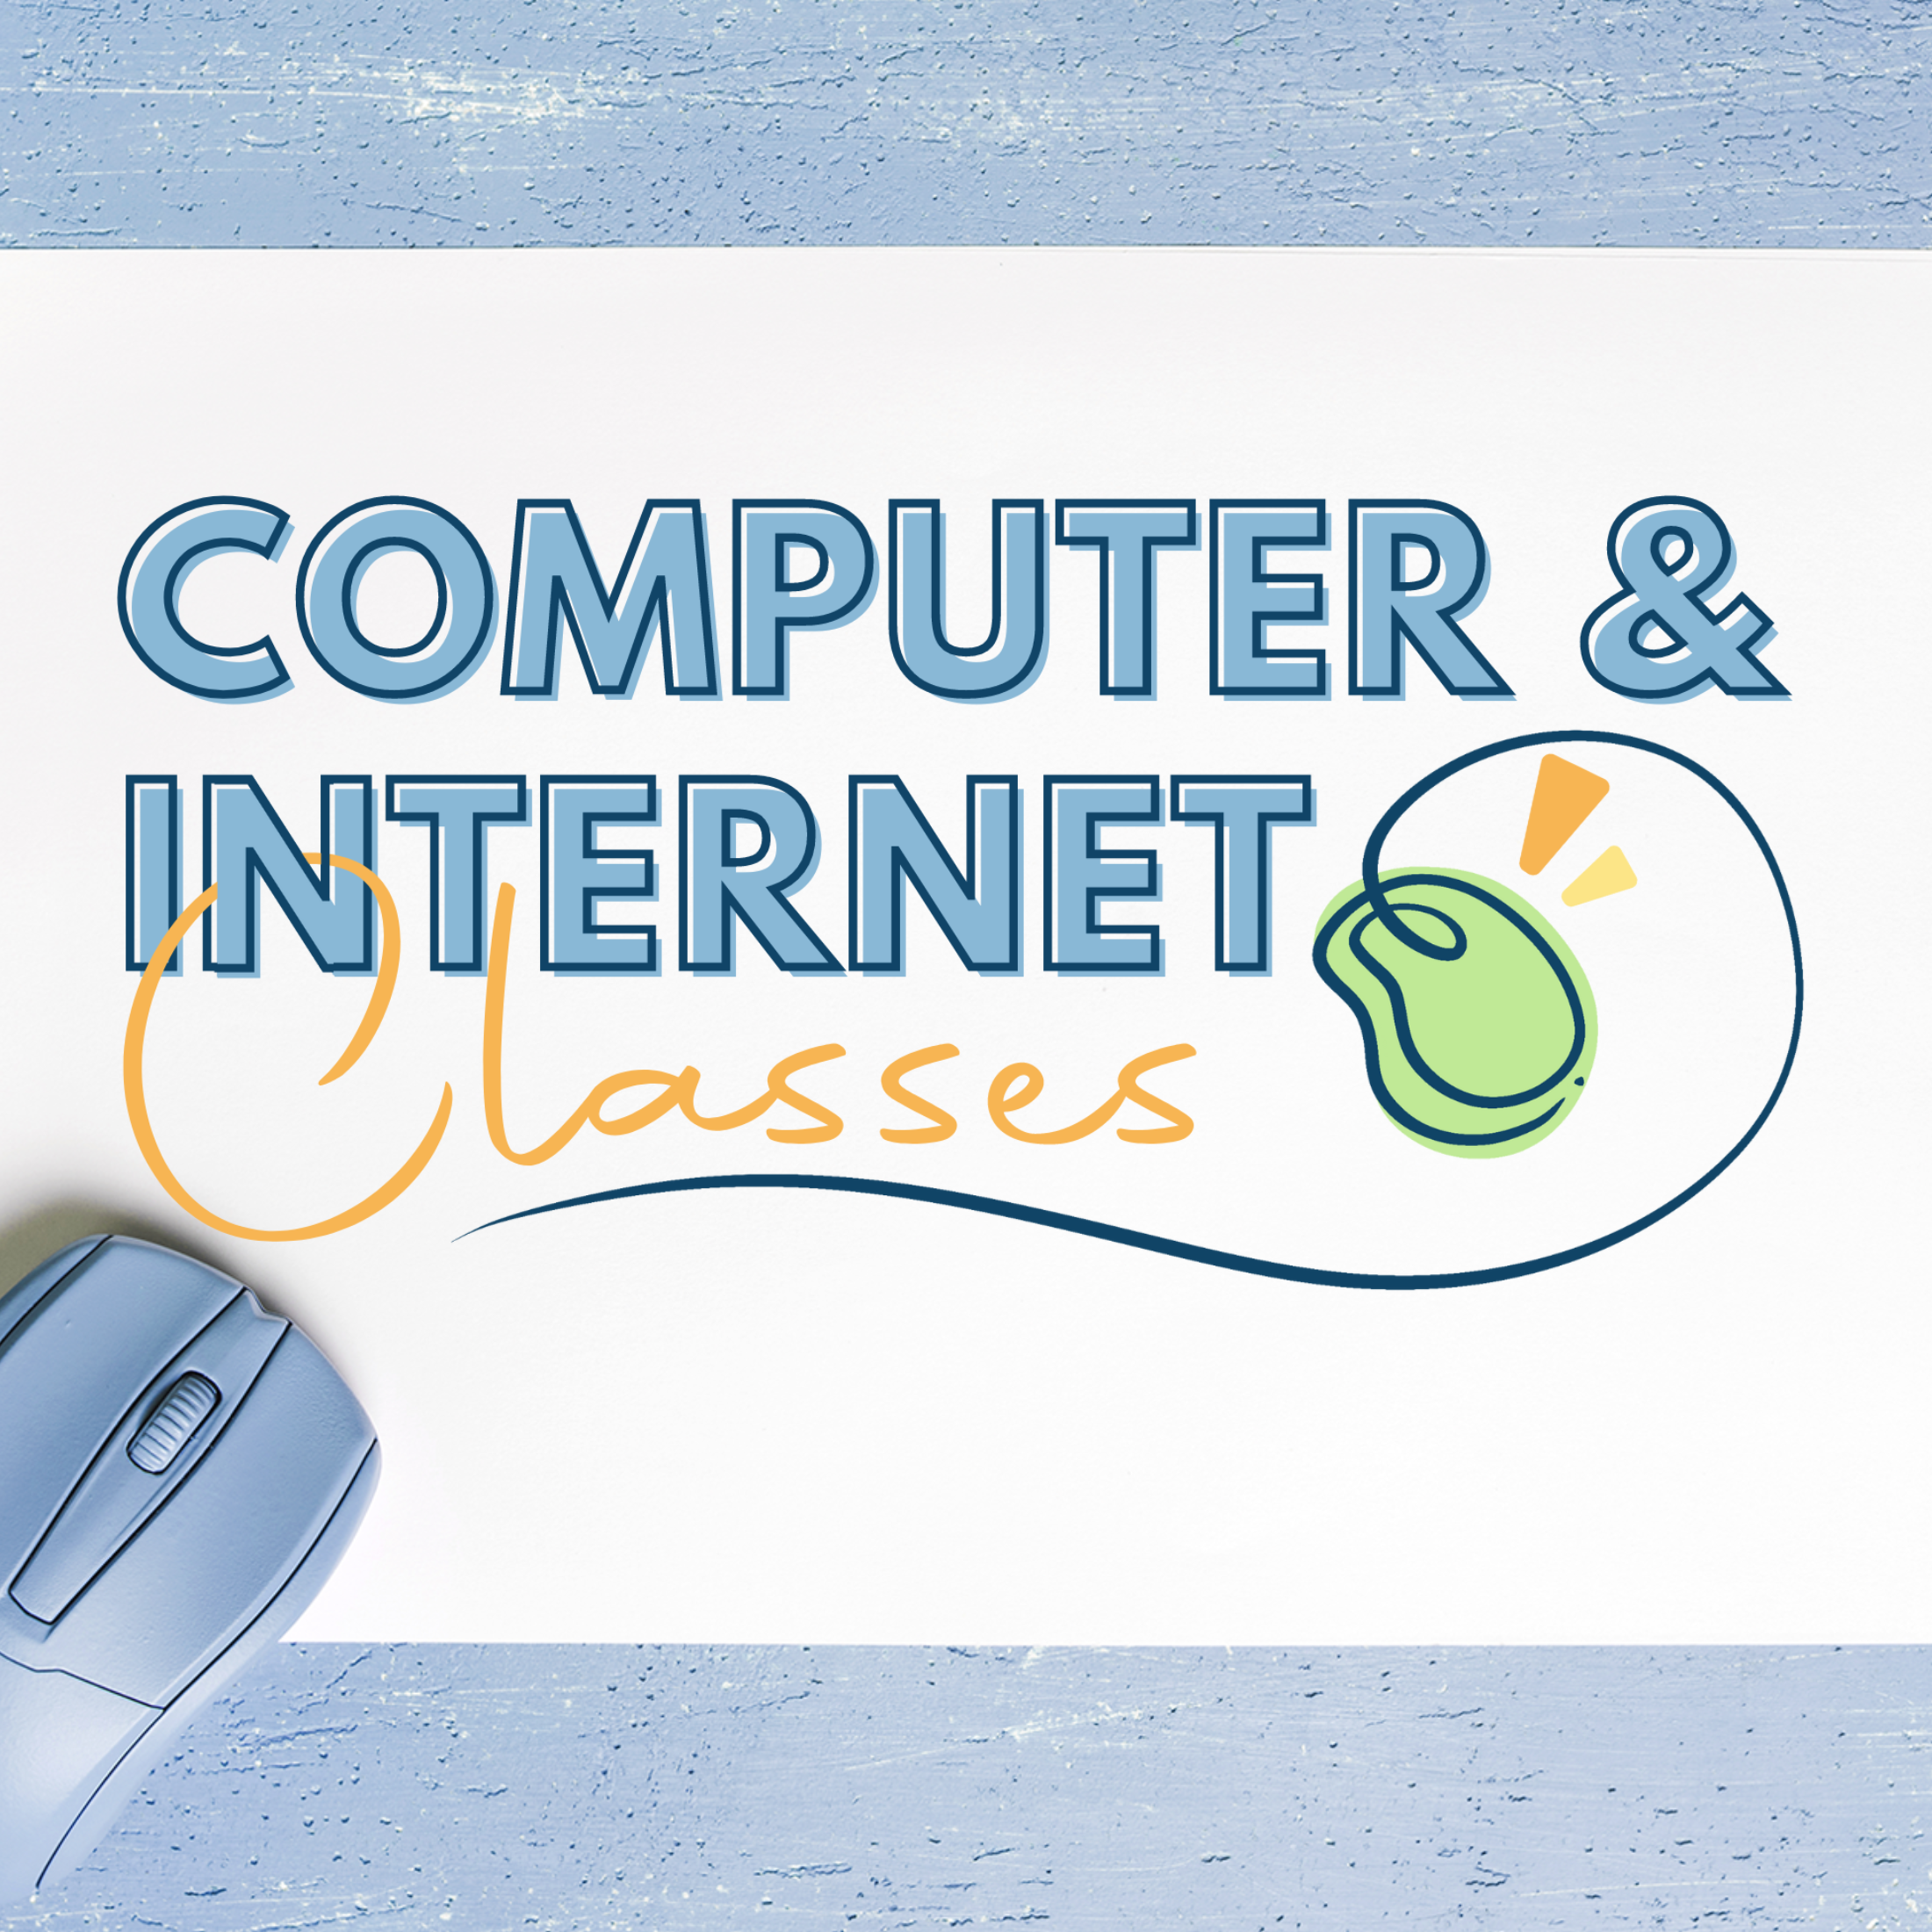 Computer & Internet Classes